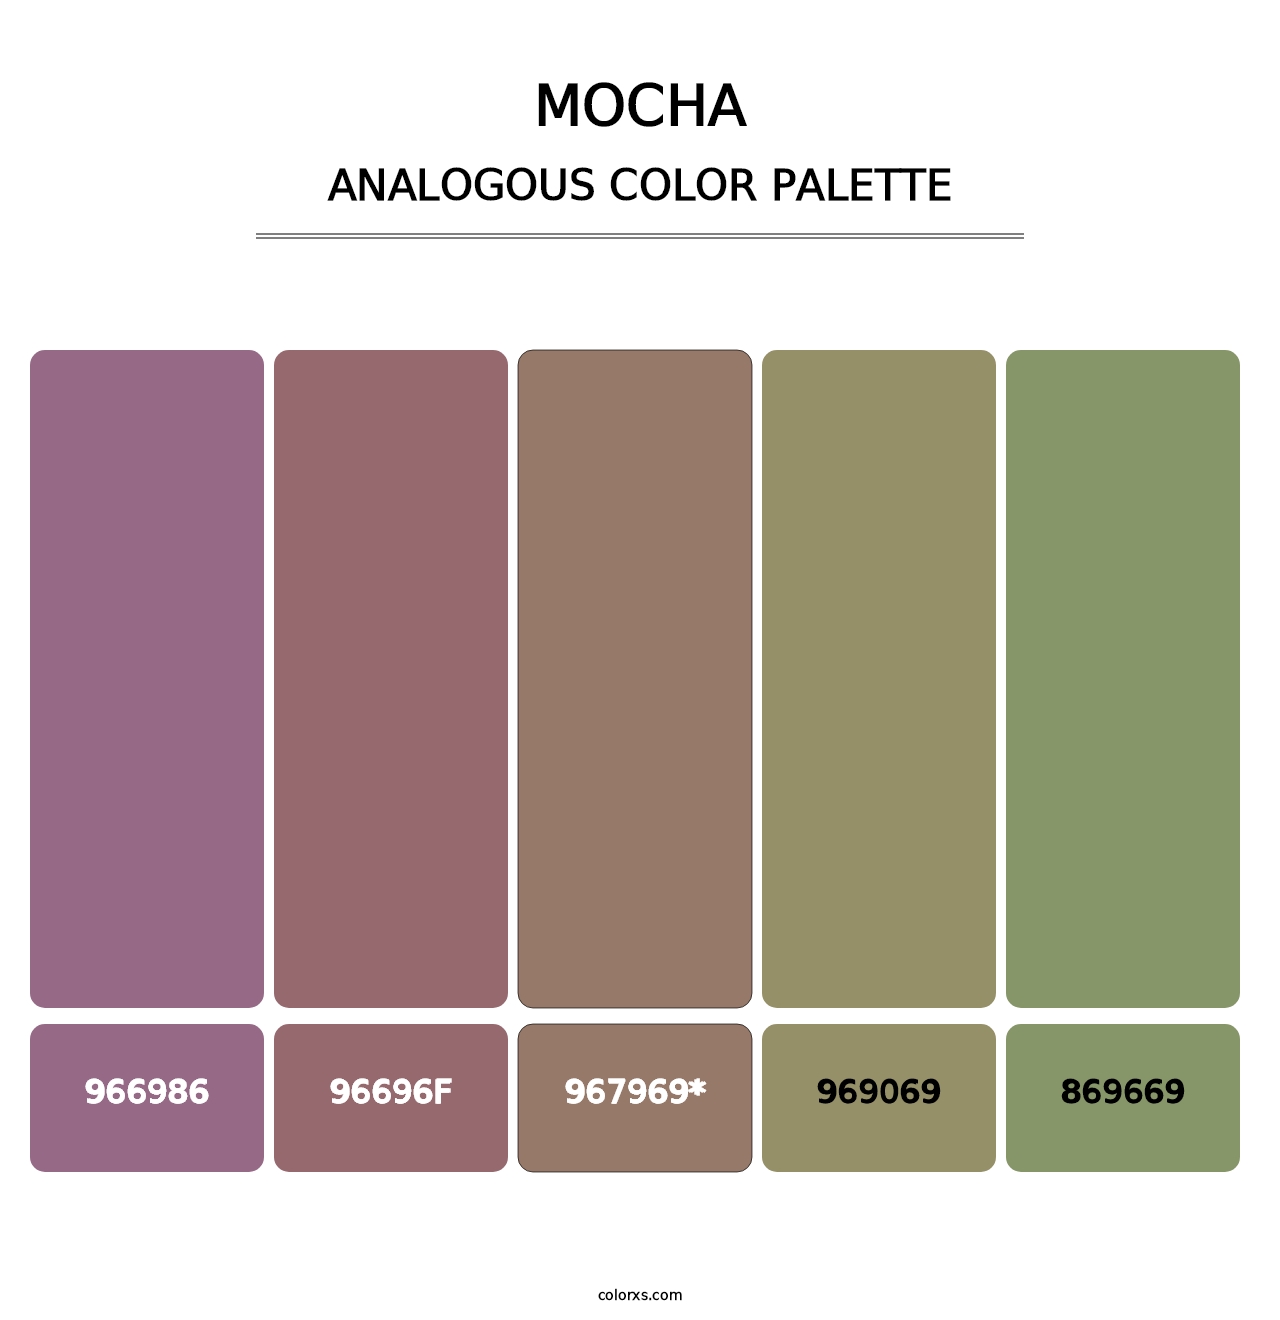 Mocha - Analogous Color Palette